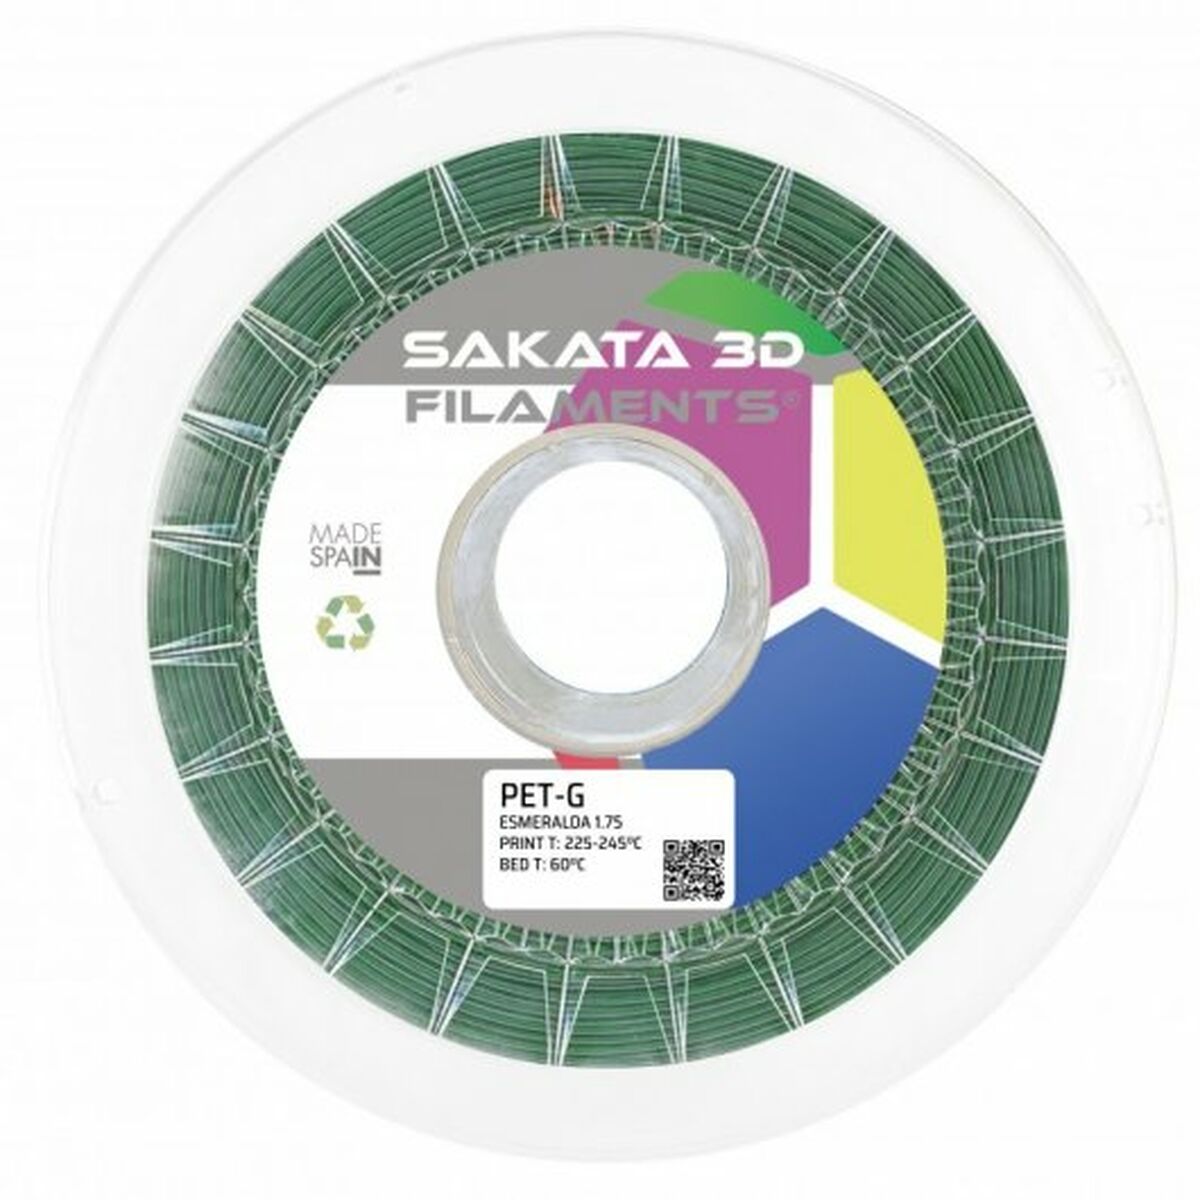 Filamentrolle Sakata 3D 10644123 PET-G Ø 1,75 mm grün